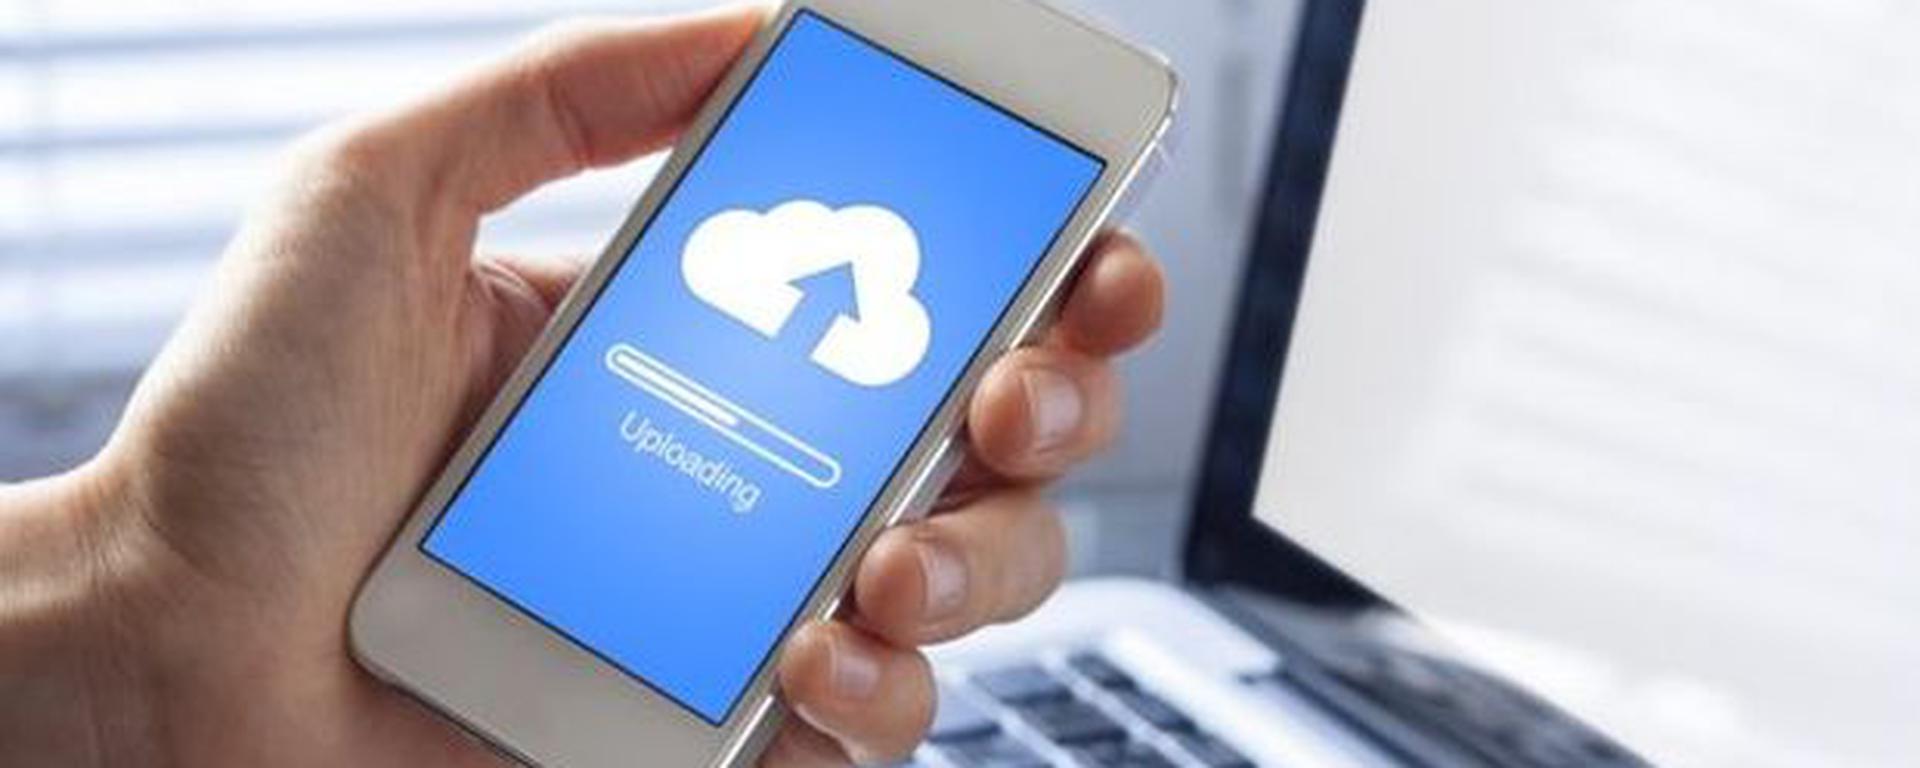 Almacenar archivos en la nube: riesgos y peligros a tomar en cuenta para cuidar nuestra ciberseguridad